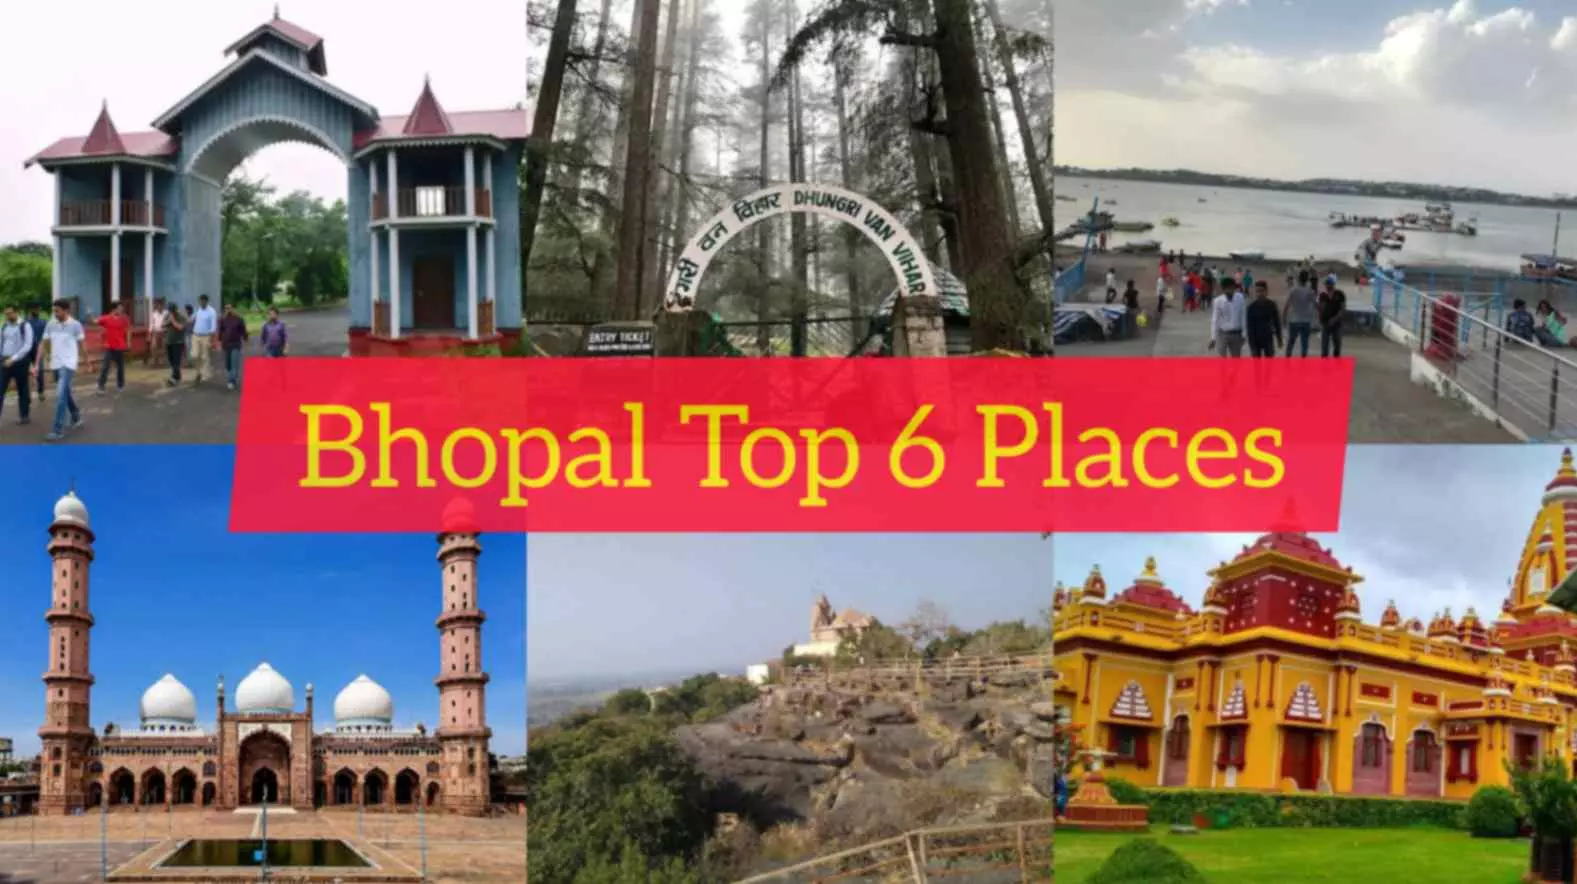 Bhopal tourism, Bhopal Famous Top 6 Places